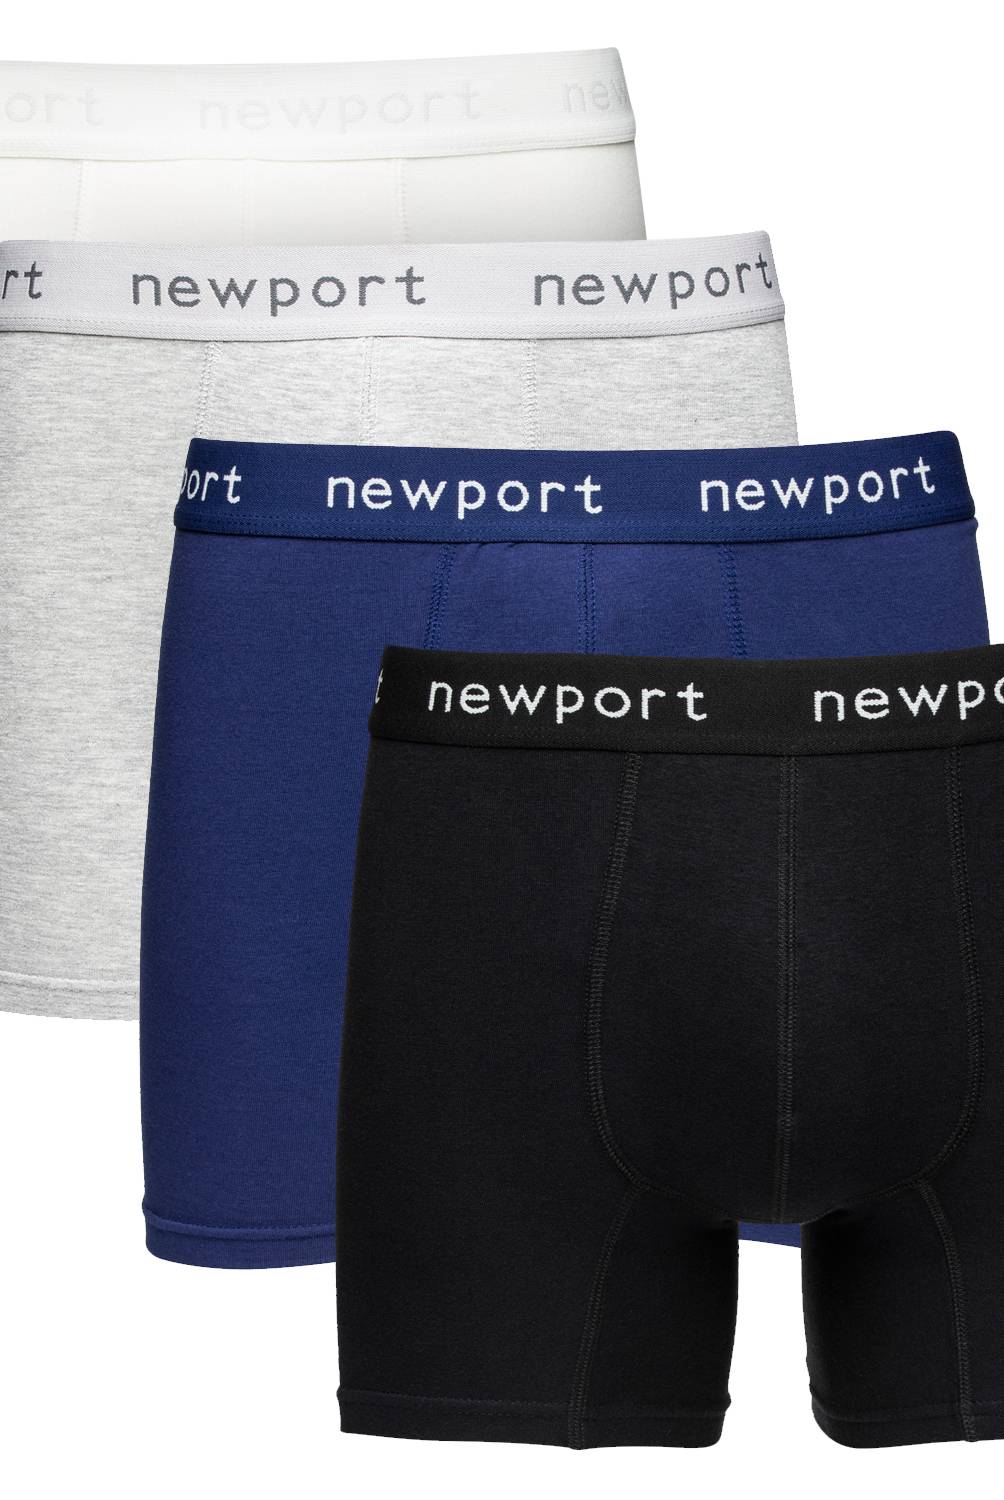 NEWPORT - Pack de 4 Boxer Algodón Hombre Newport